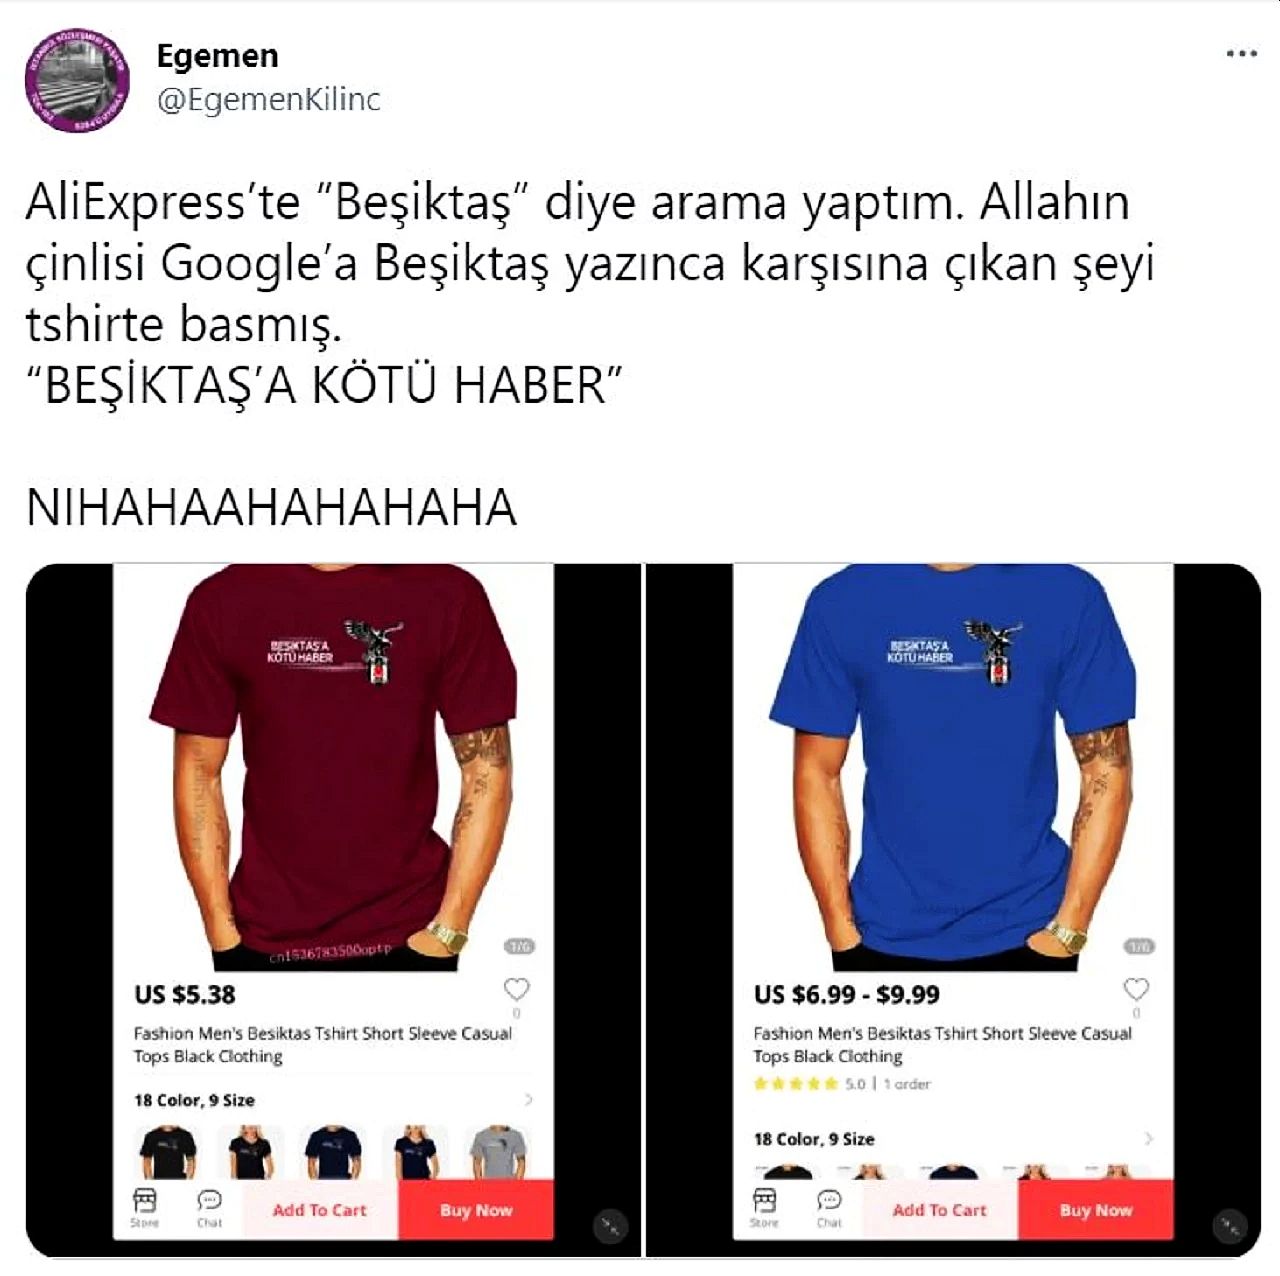 Aliexpress'te 'Beşiktaş'a Kötü Haber' Baskılı Tişörtler Şaşkınlık Yarattı!